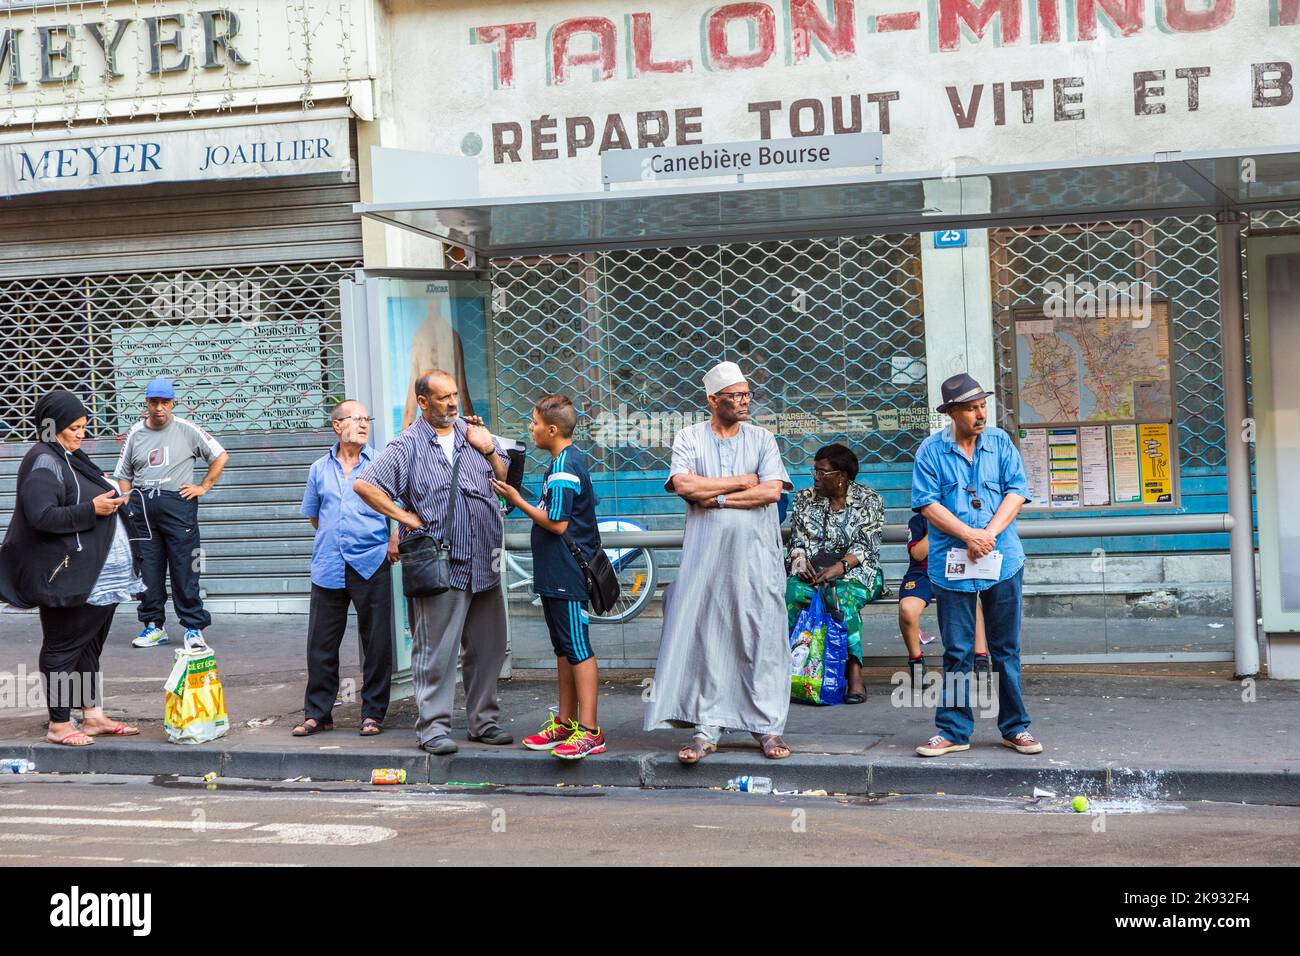 MARSIGLIA, FRANCIA, 10 LUGLIO 2015: Persone di diverse nazionalità aspettano alla fermata dell'autobus a Marsiglia, Francia. Marsiglia ha un popul etnico molto misto Foto Stock